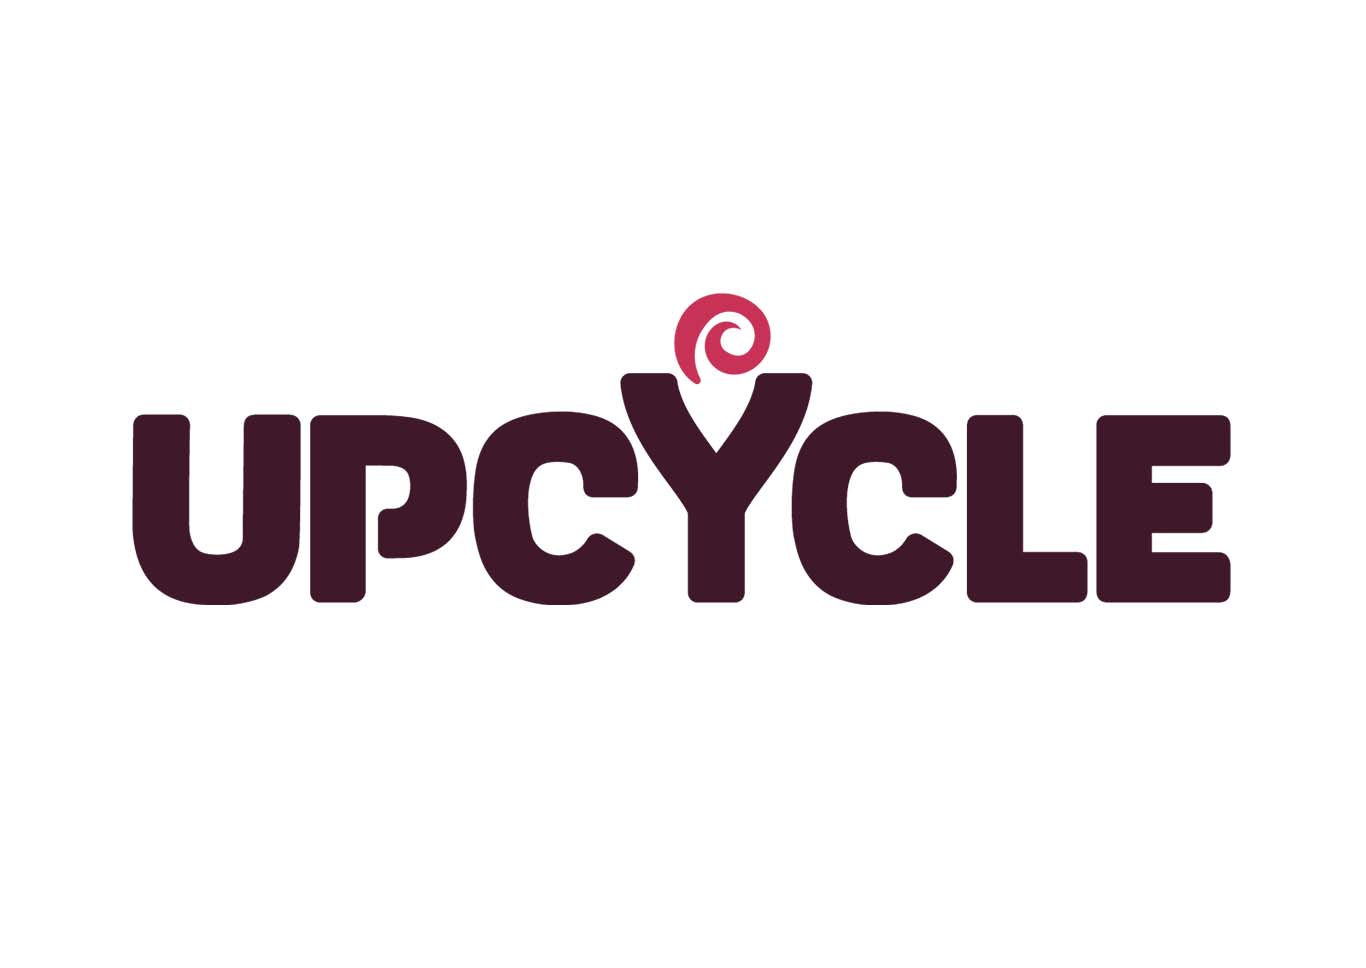 Kroptek Upcycle partnership